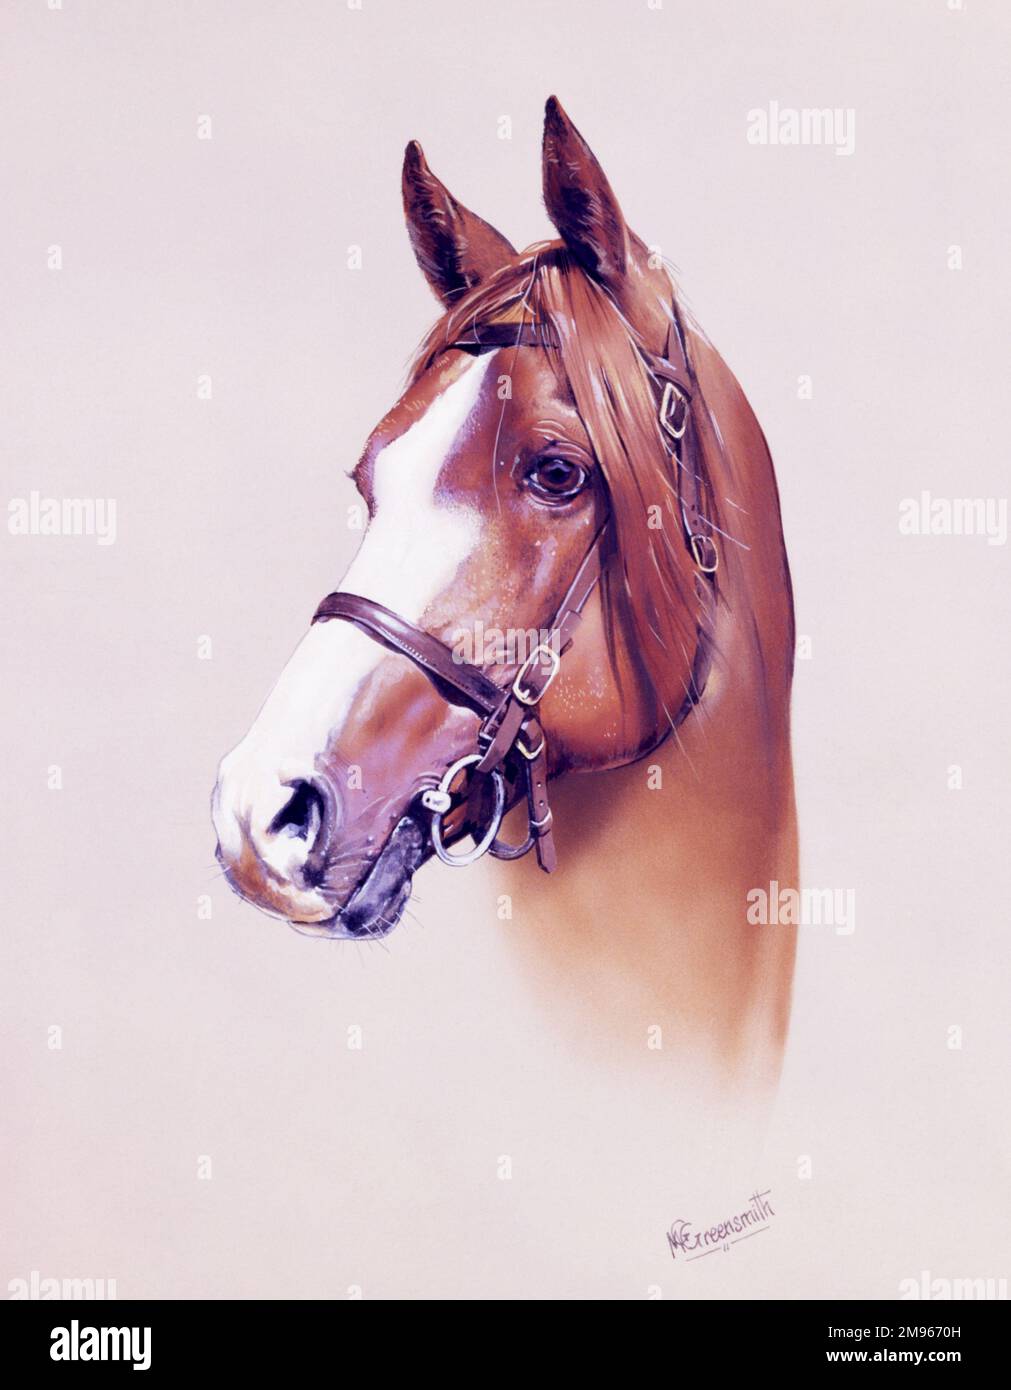 Ein sehr detailliertes Porträtbild eines Pferdes von Malcolm Greensmith. Stockfoto